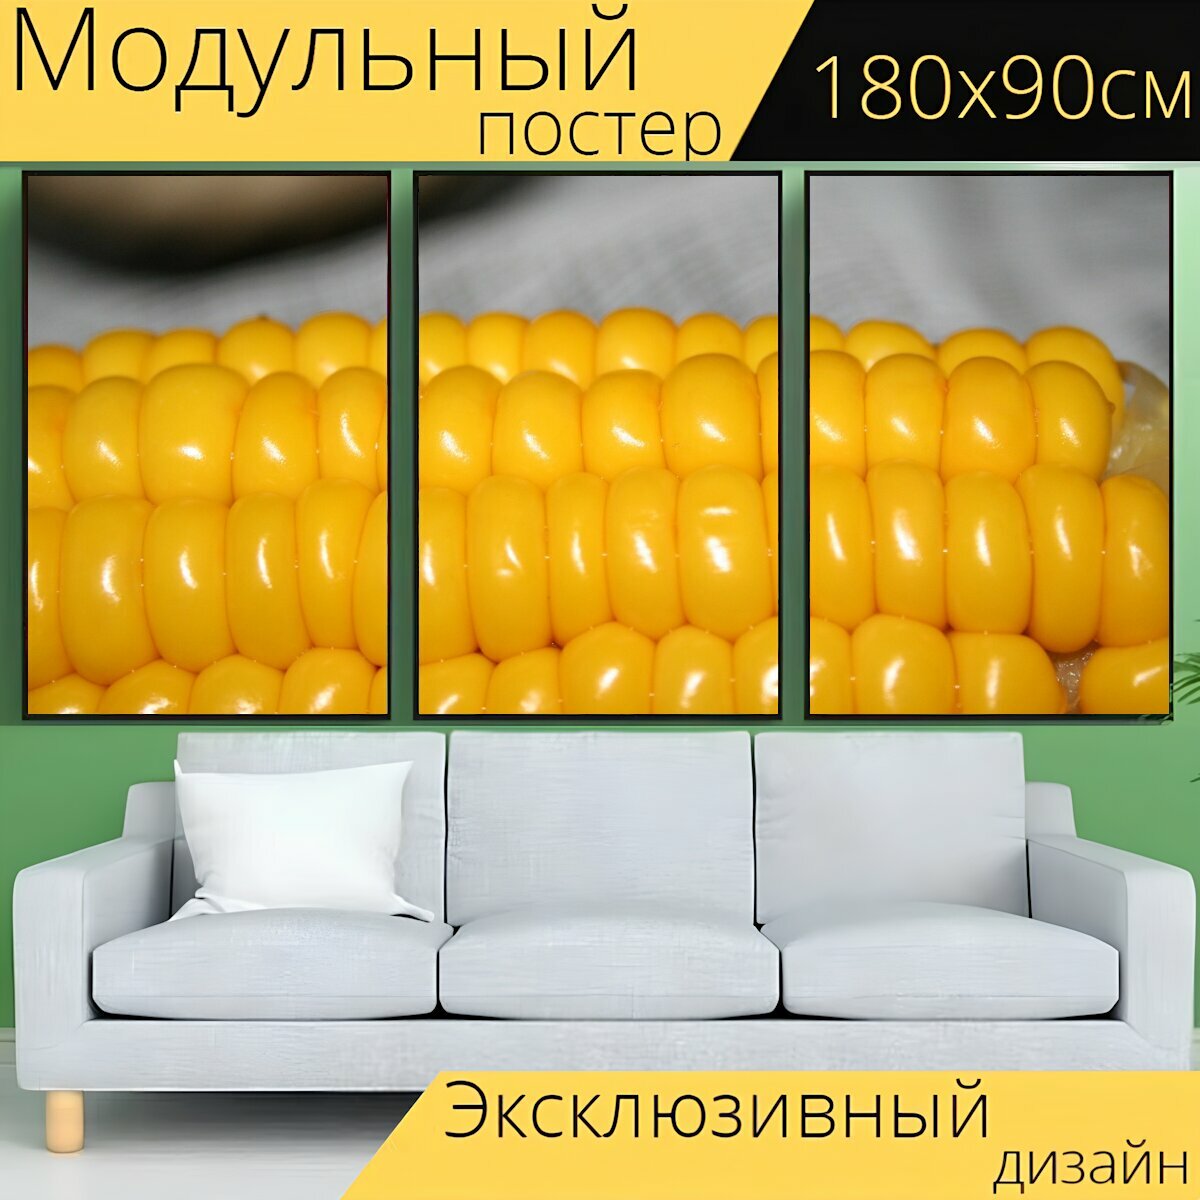 Модульный постер "Кукуруза, фляга, приготовленный" 180 x 90 см. для интерьера